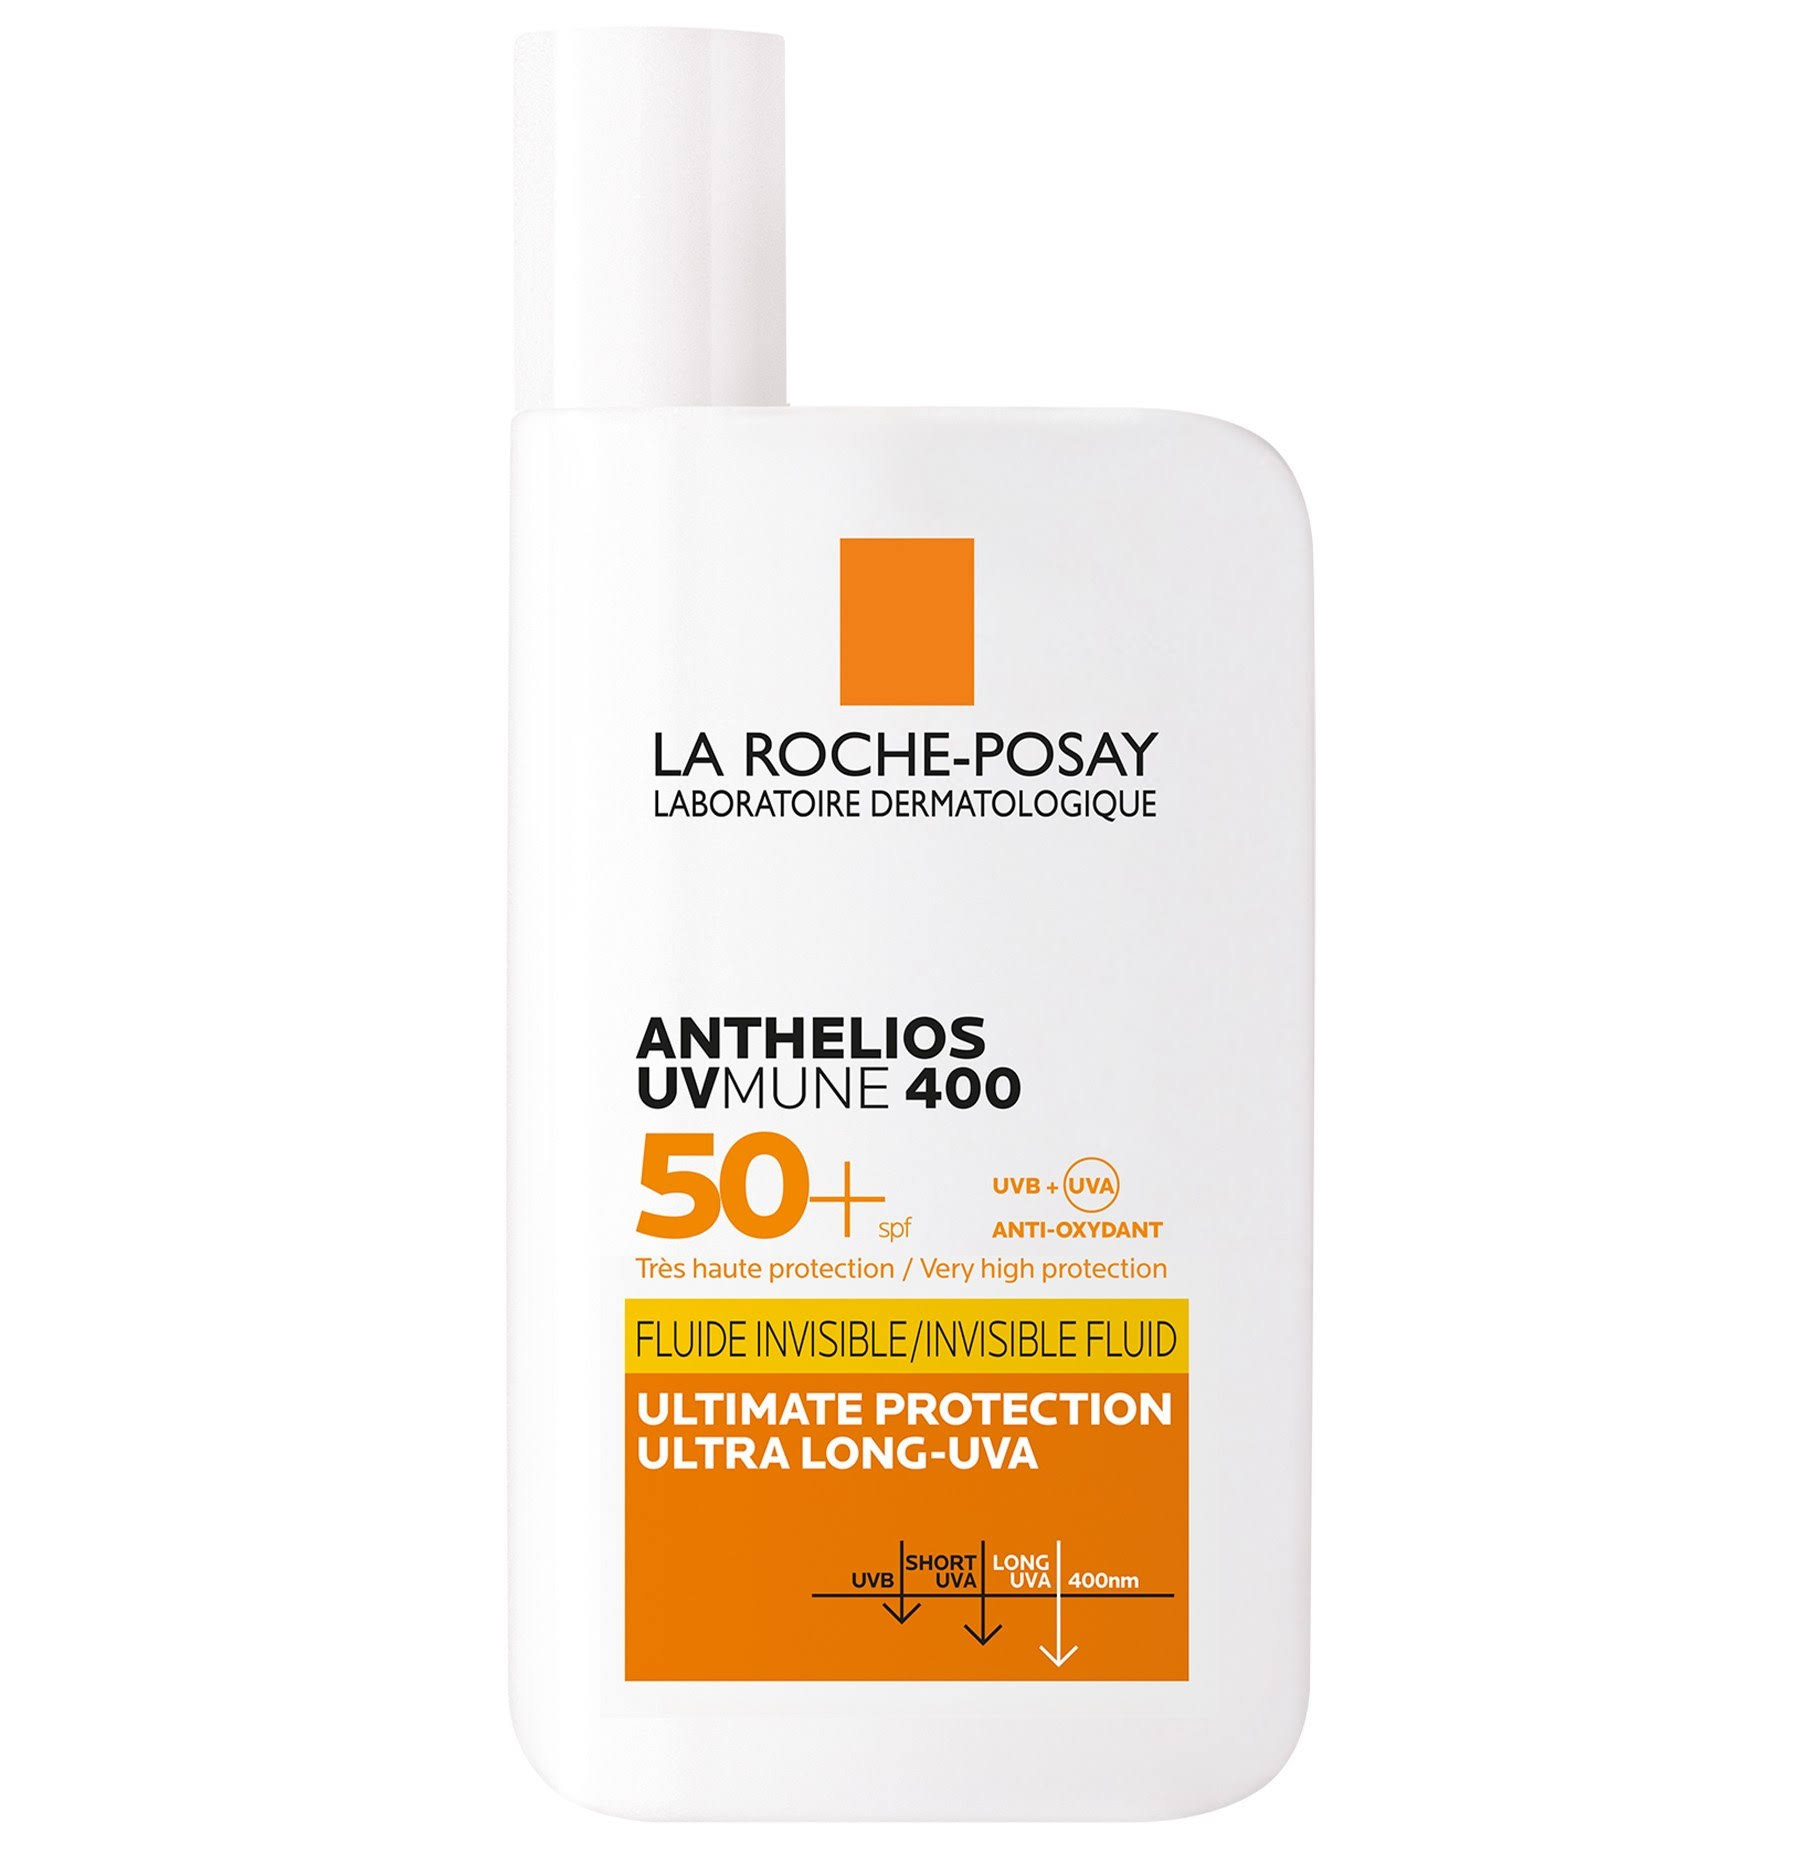 La Roche Posay Anthelios Uvmune 400 Invisible Fluid SPF50+ 50ml